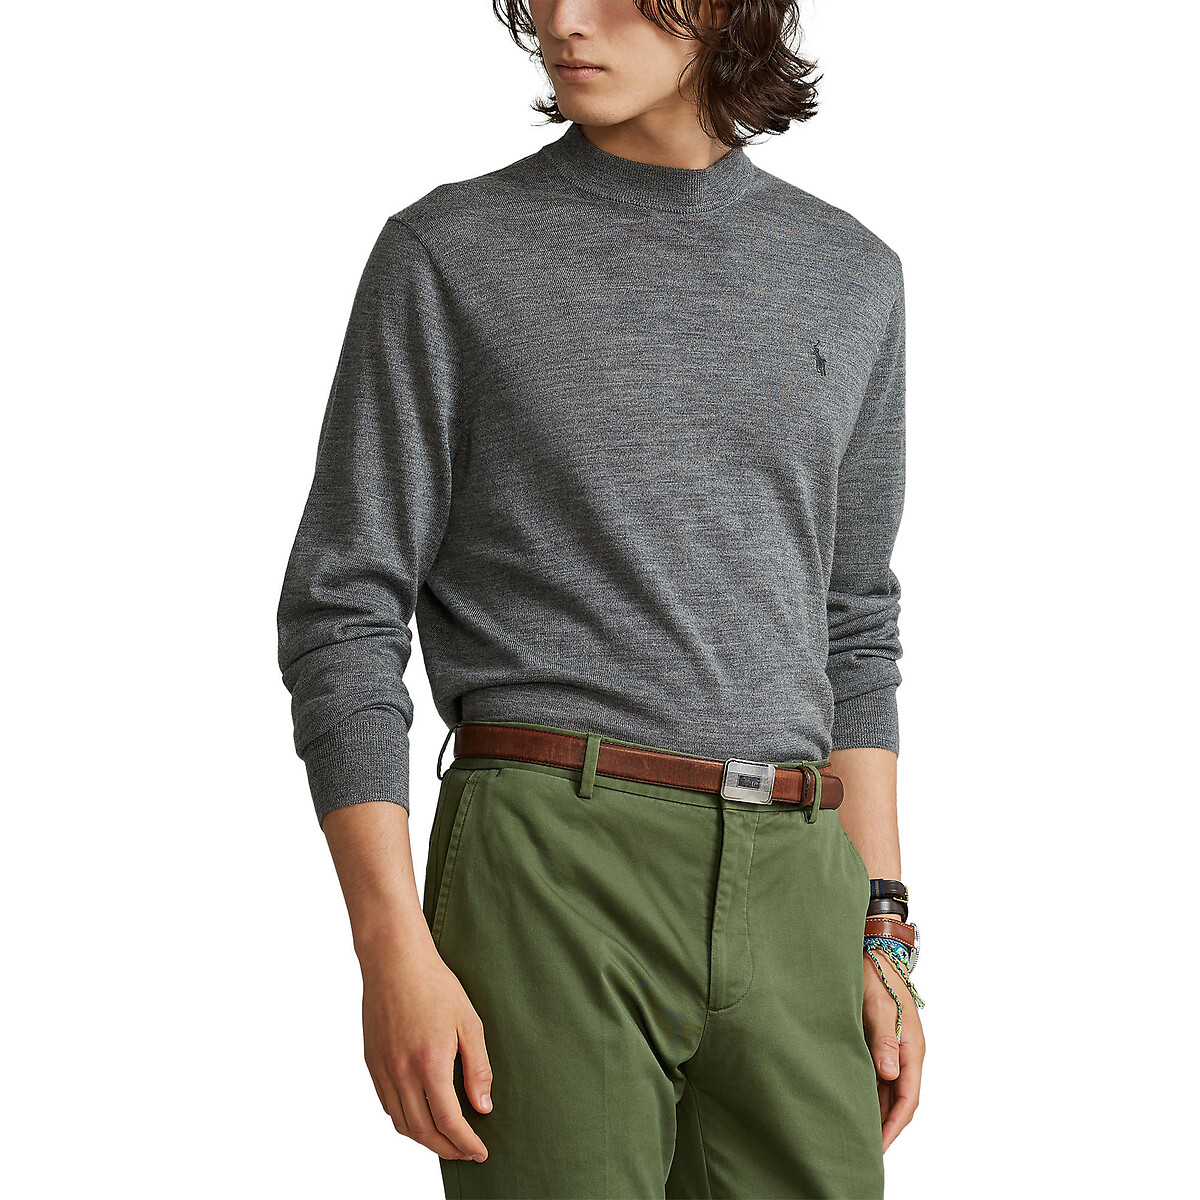 Пуловер POLO RALPH LAUREN С воротником-стойкой из шерсти мериноса XL серый, размер XL